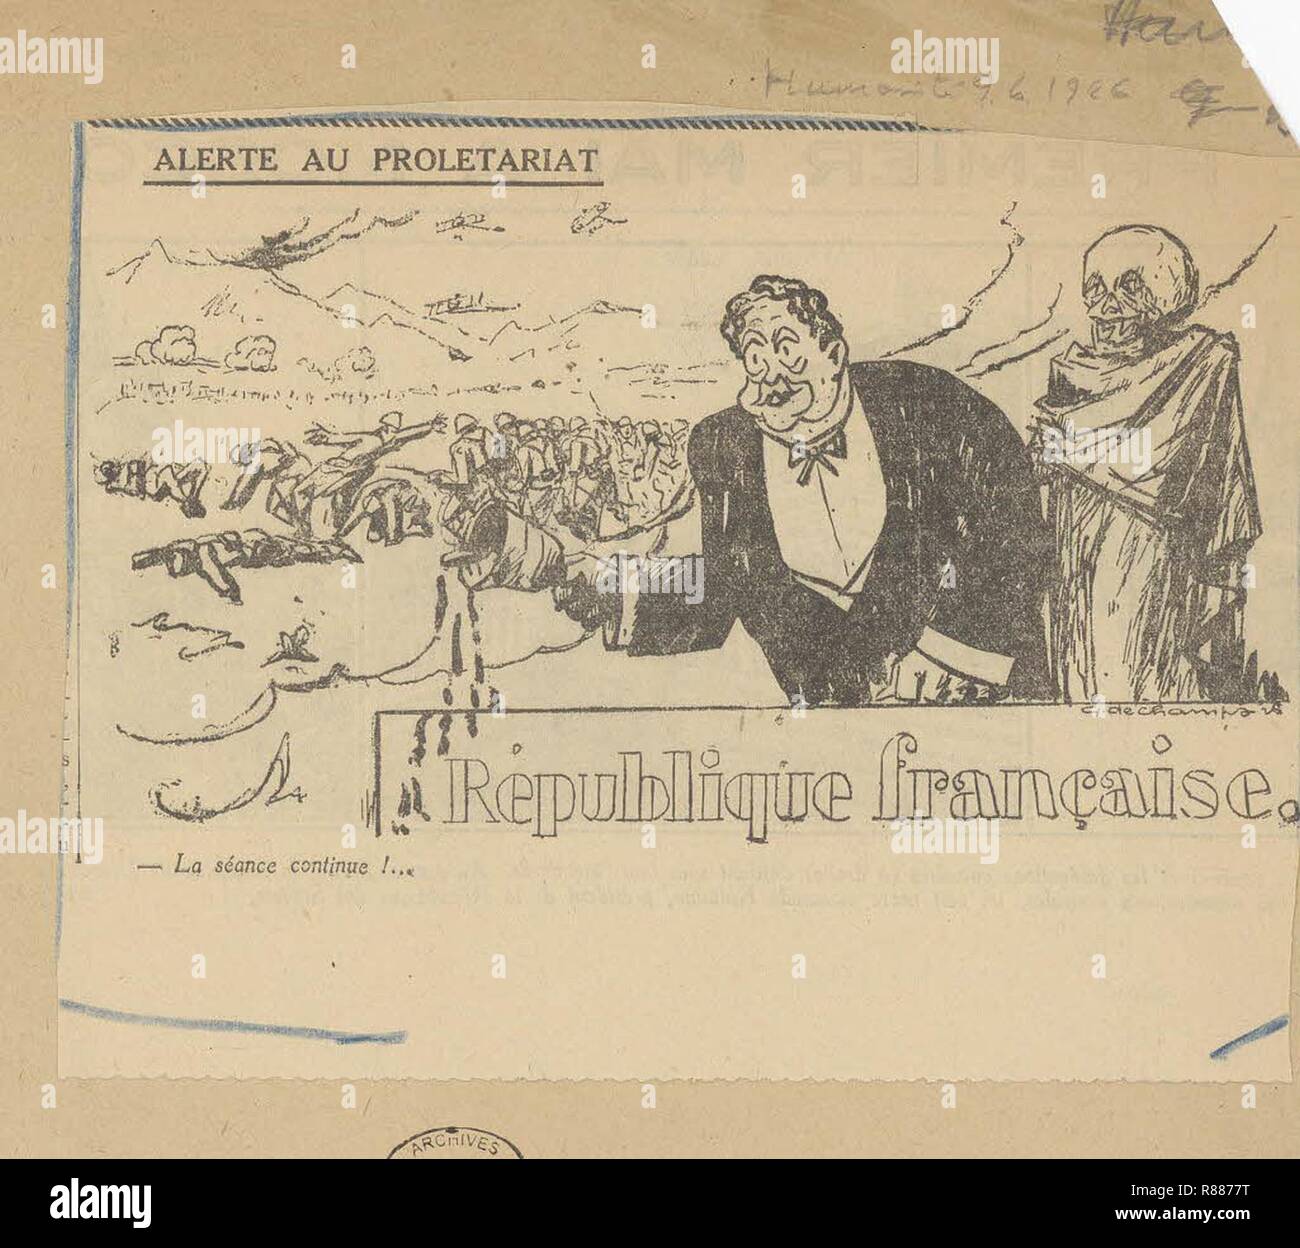 Caricatura de Paul Painlevé, président du Conseil, par laquelle il est accusé de fabriquer de faux papiers diplomatique - Archives Nationales - 313AP-20 - (2). Foto de stock